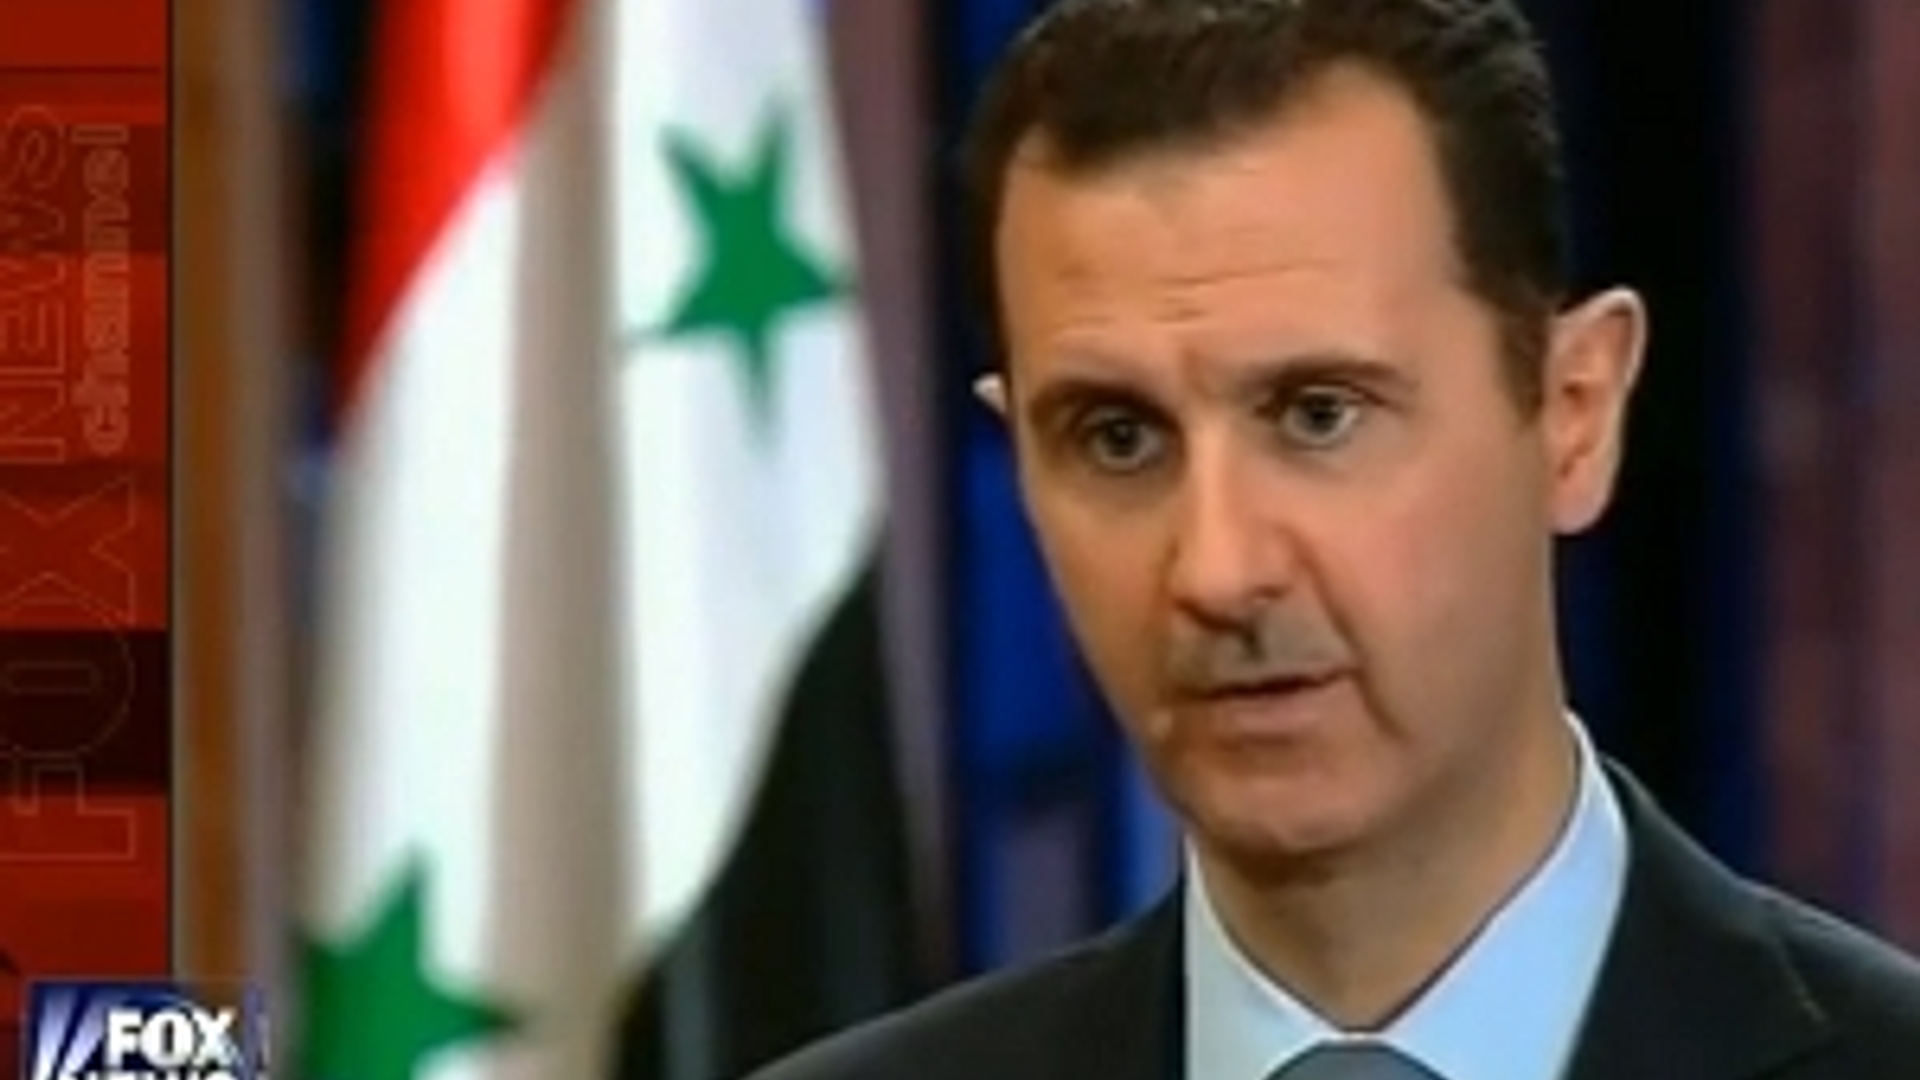 Assad300.jpg